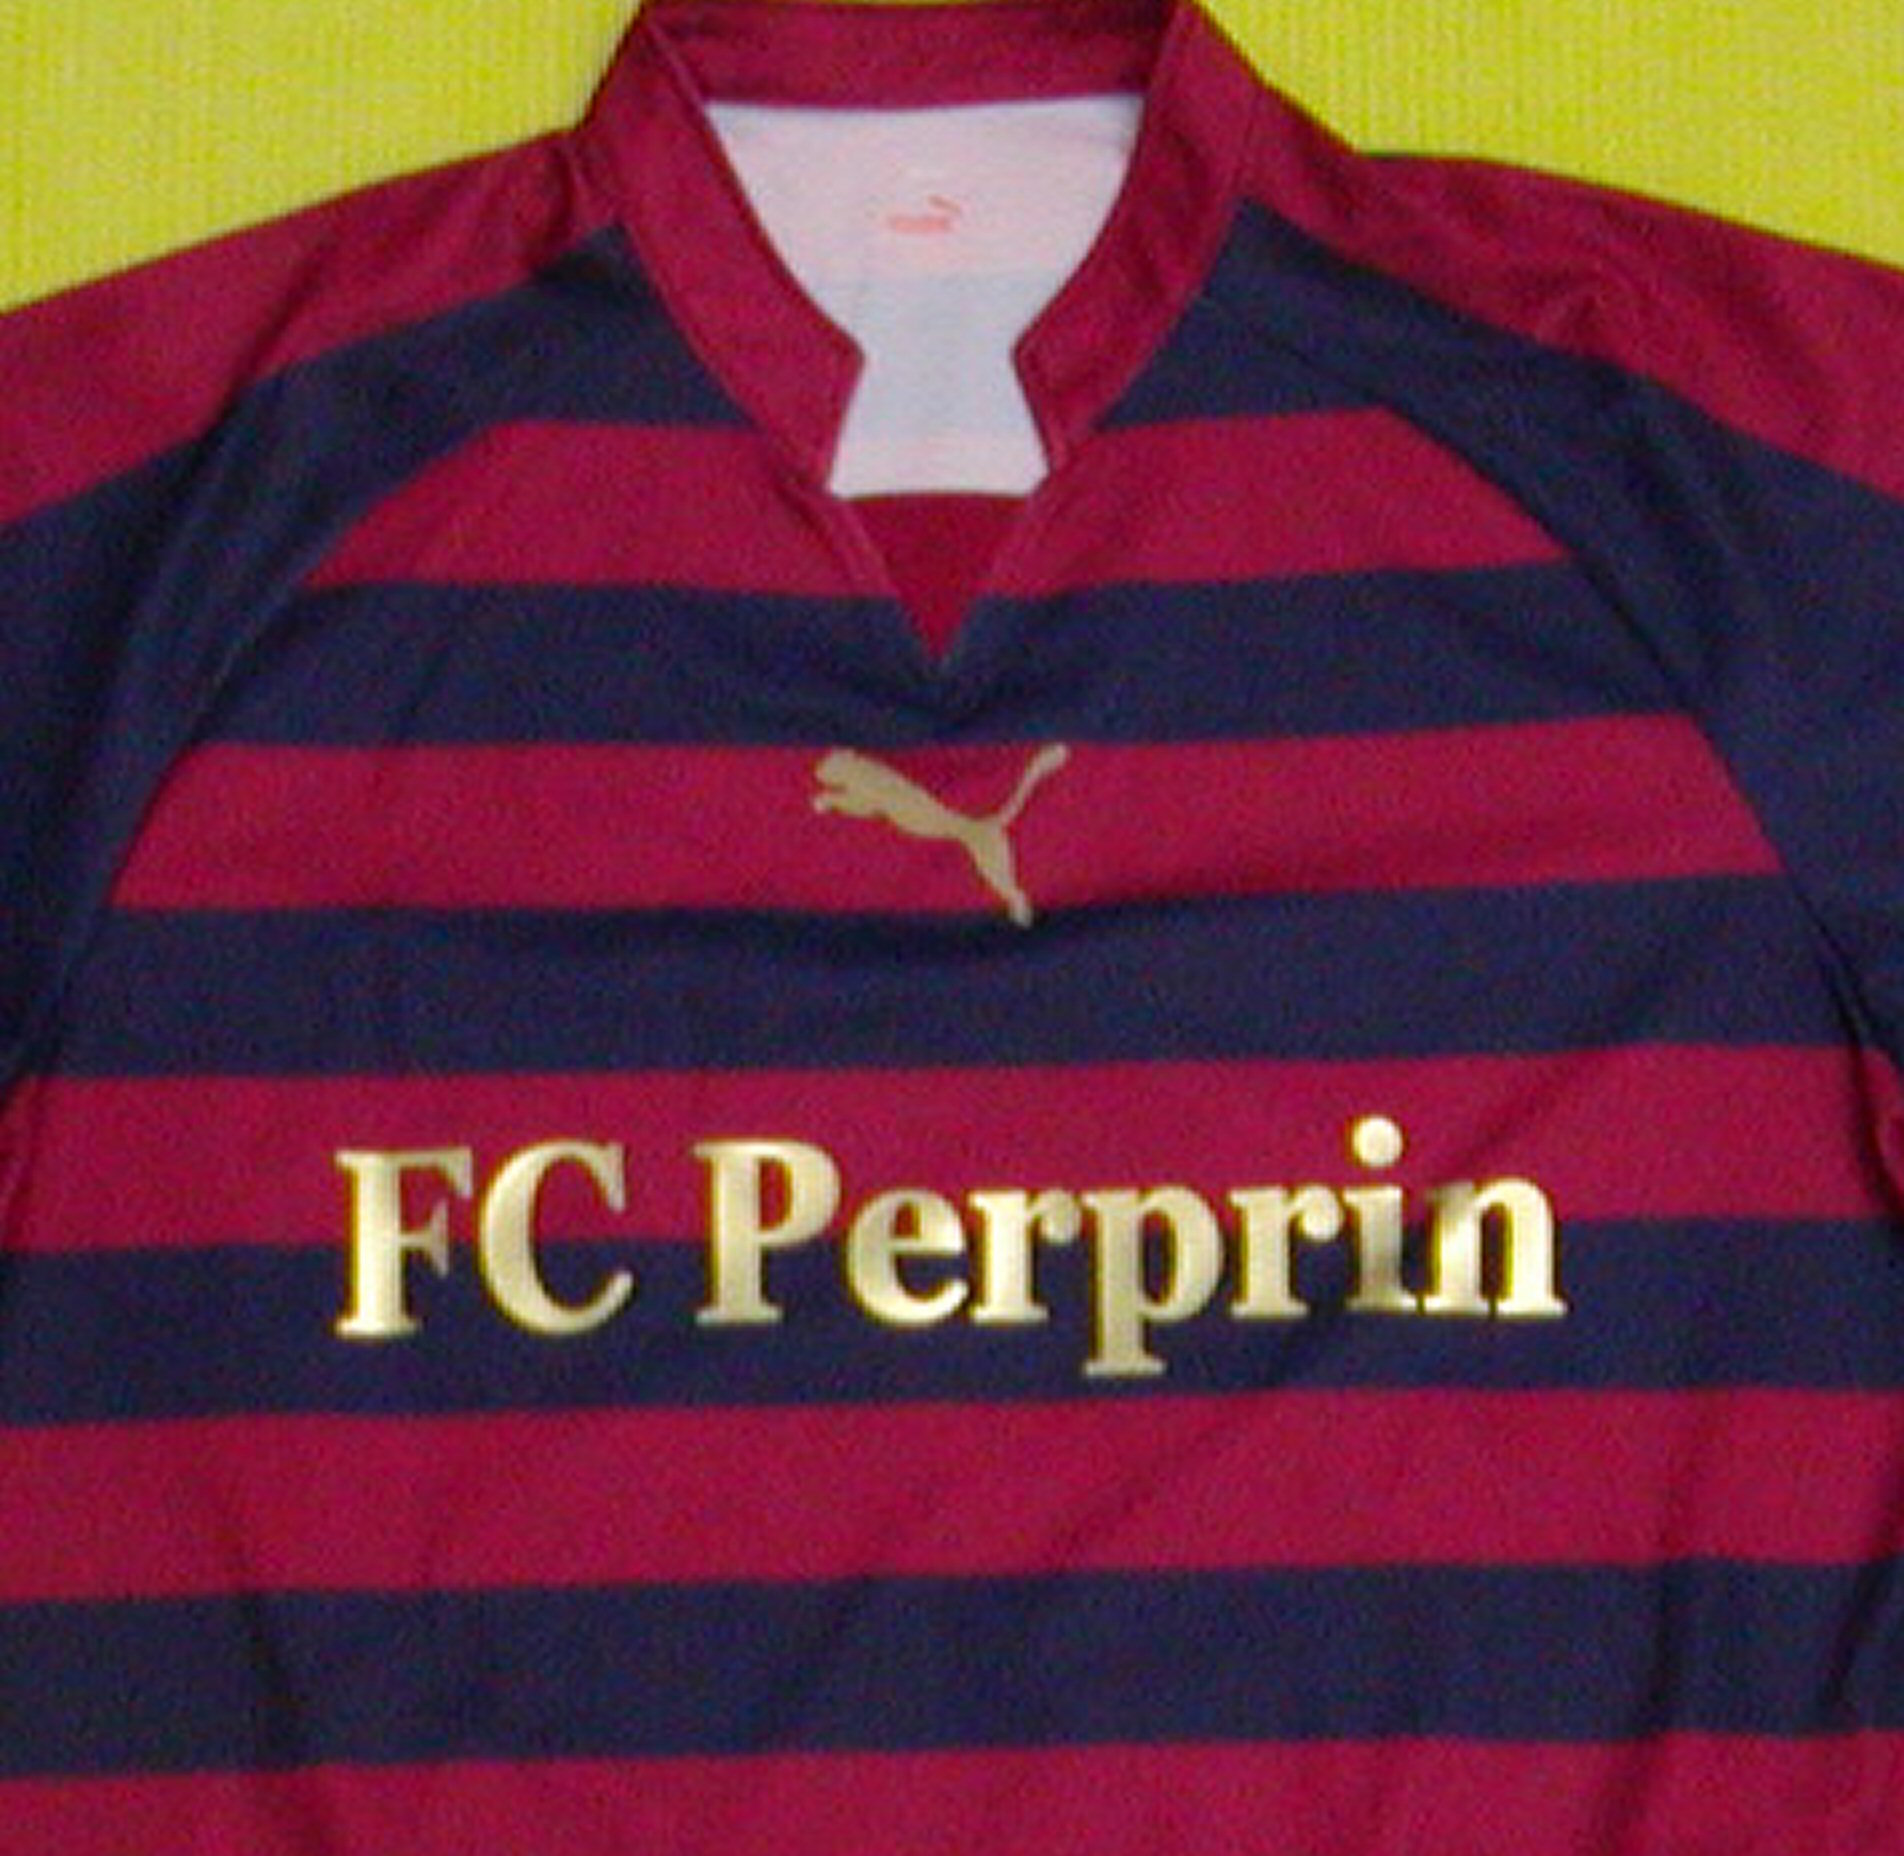 FC Perprinl